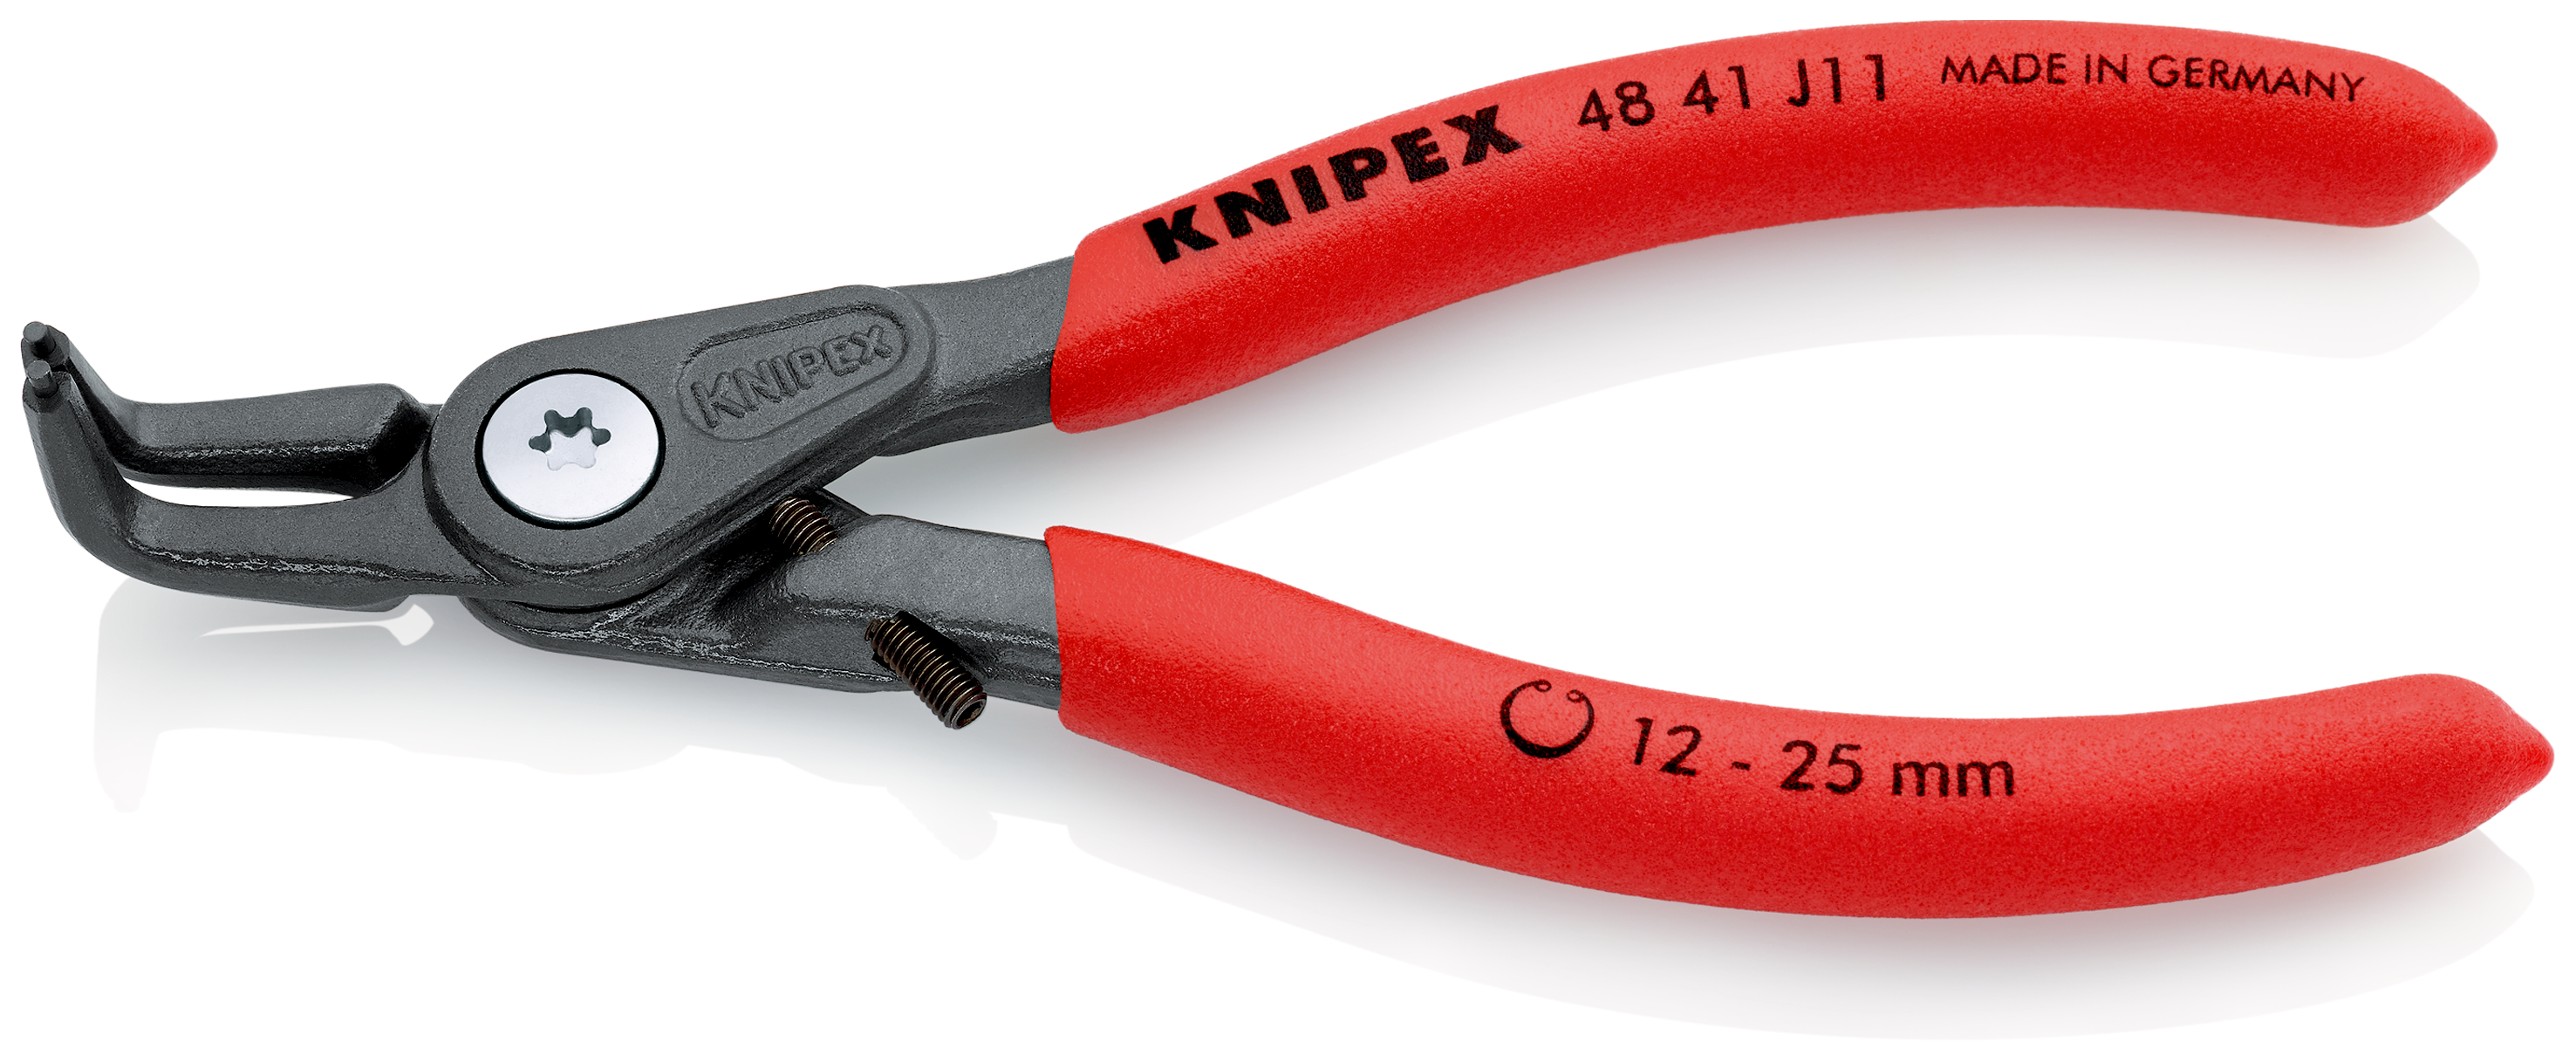 Knipex 4841J11 Cleste pentru inele de siguranta de interior, lungime 130 mm